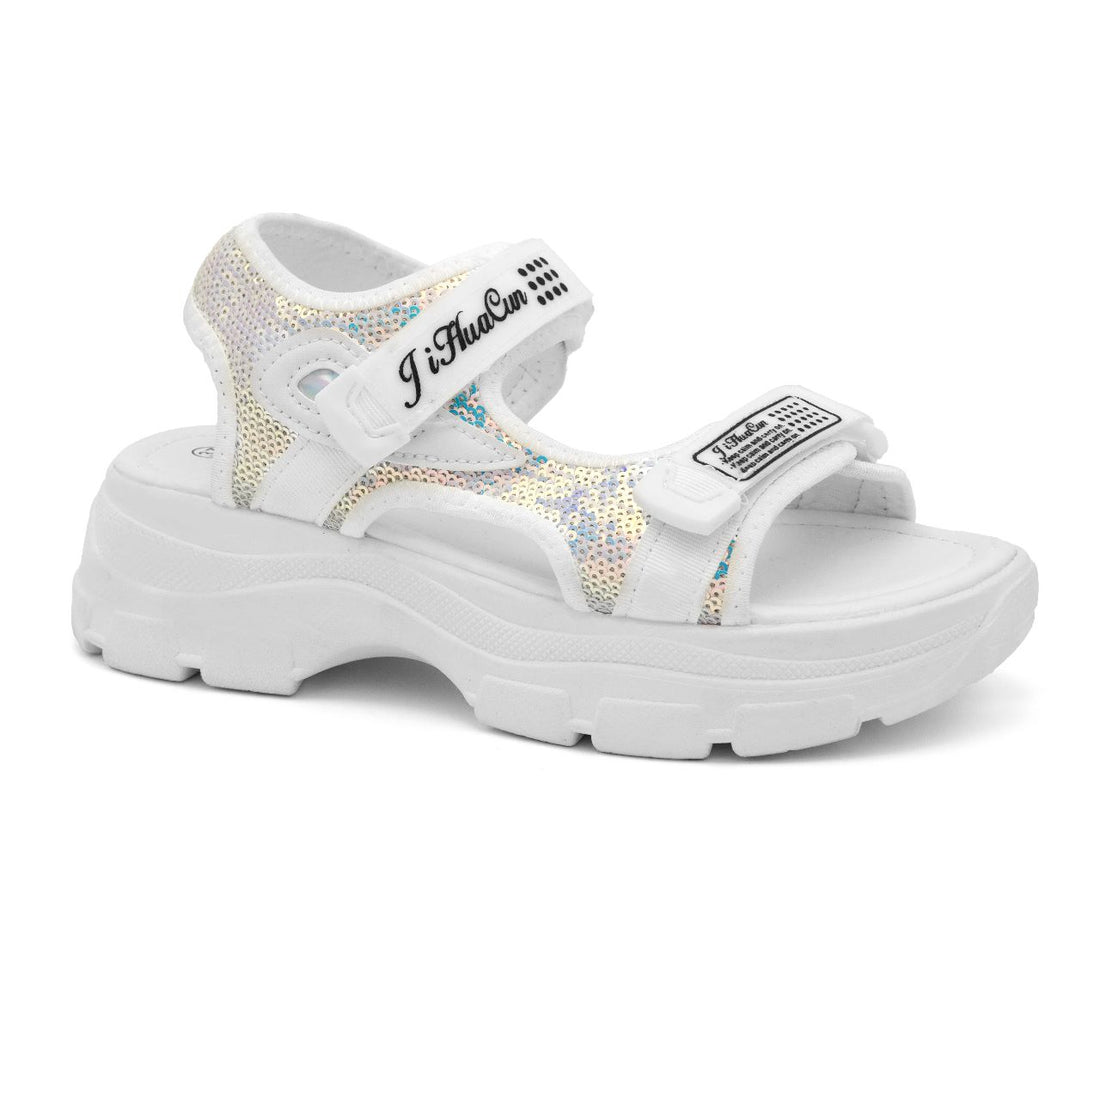 ZLXY004 sandal